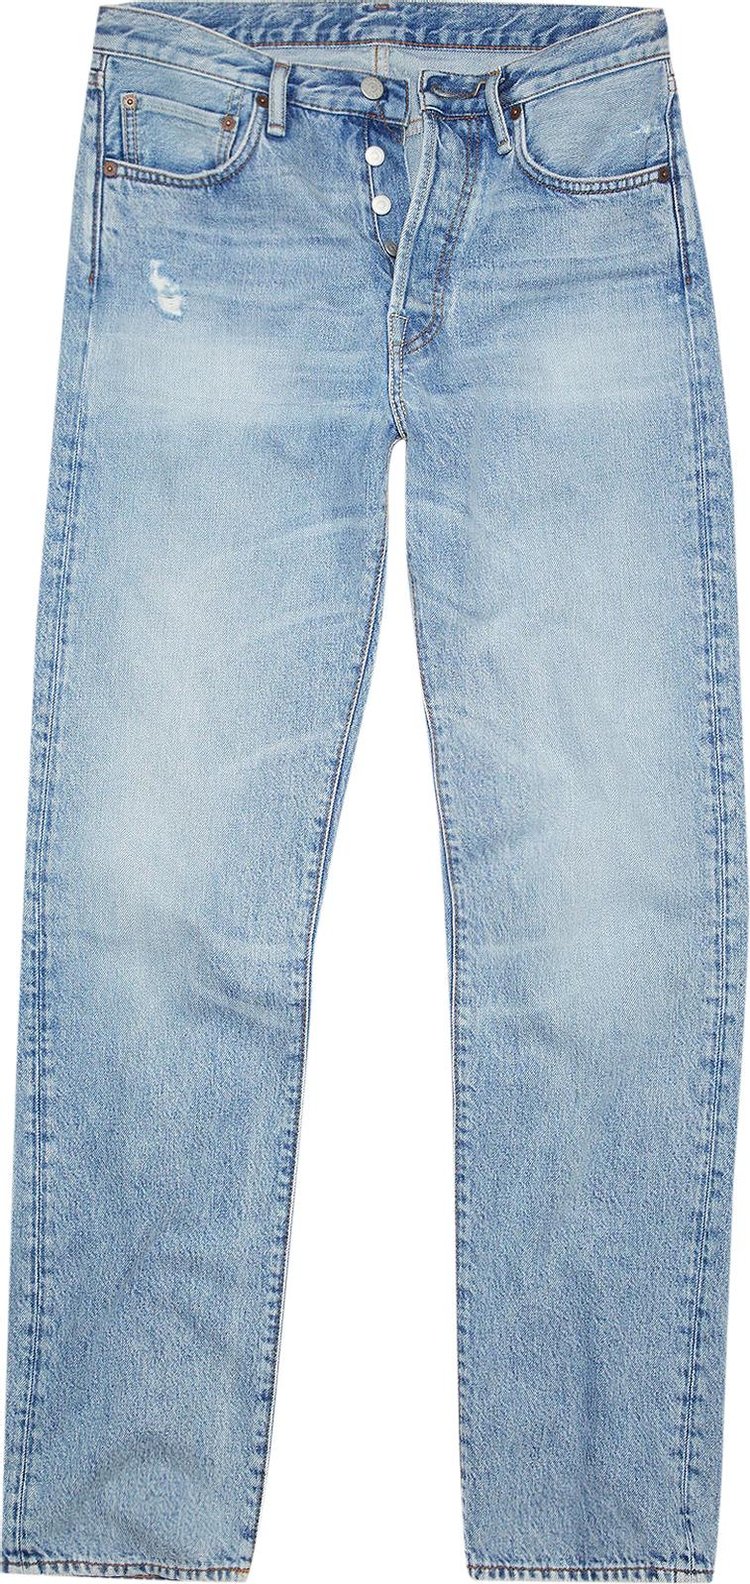 Джинсы Acne Studios Regular Fit Jeans 'Light Blue', синий джинсы acne studios classic fit jeans black черный